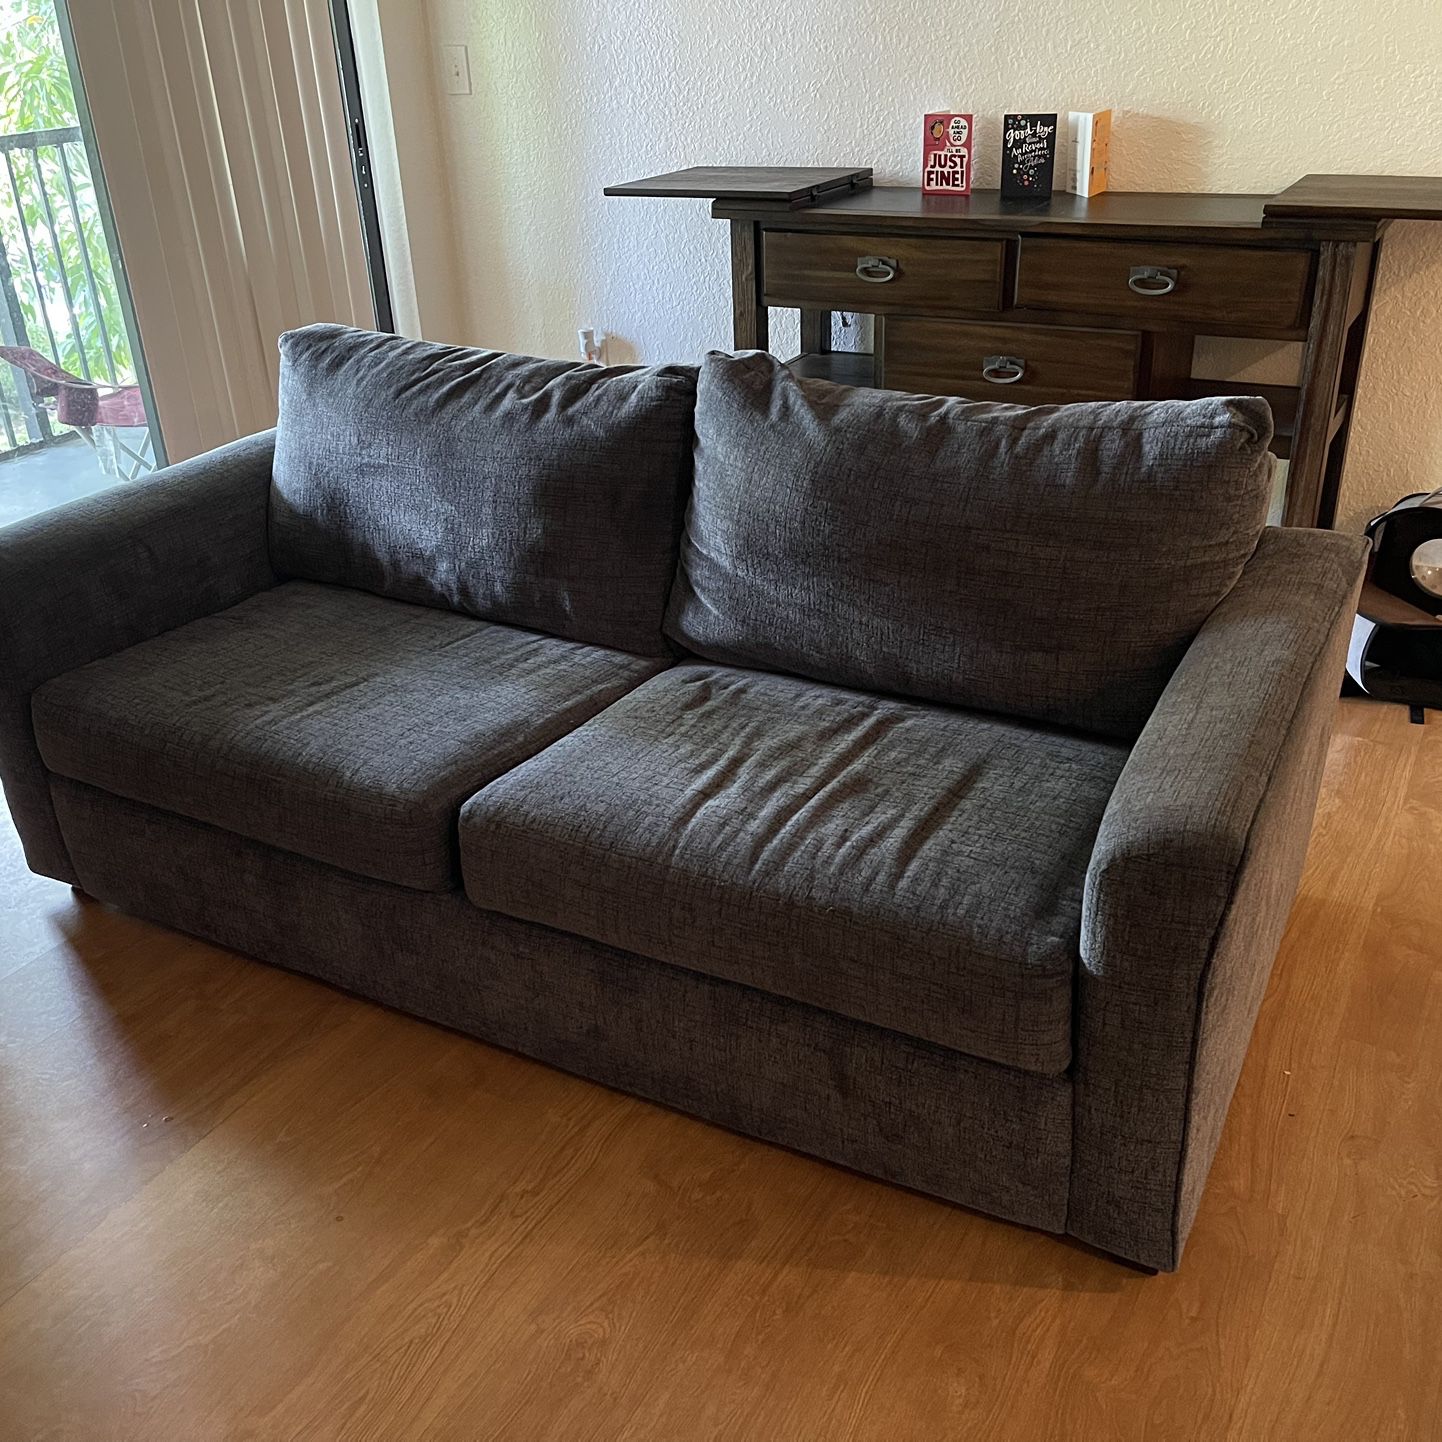 Queen Gray Sleeper Sofa $300